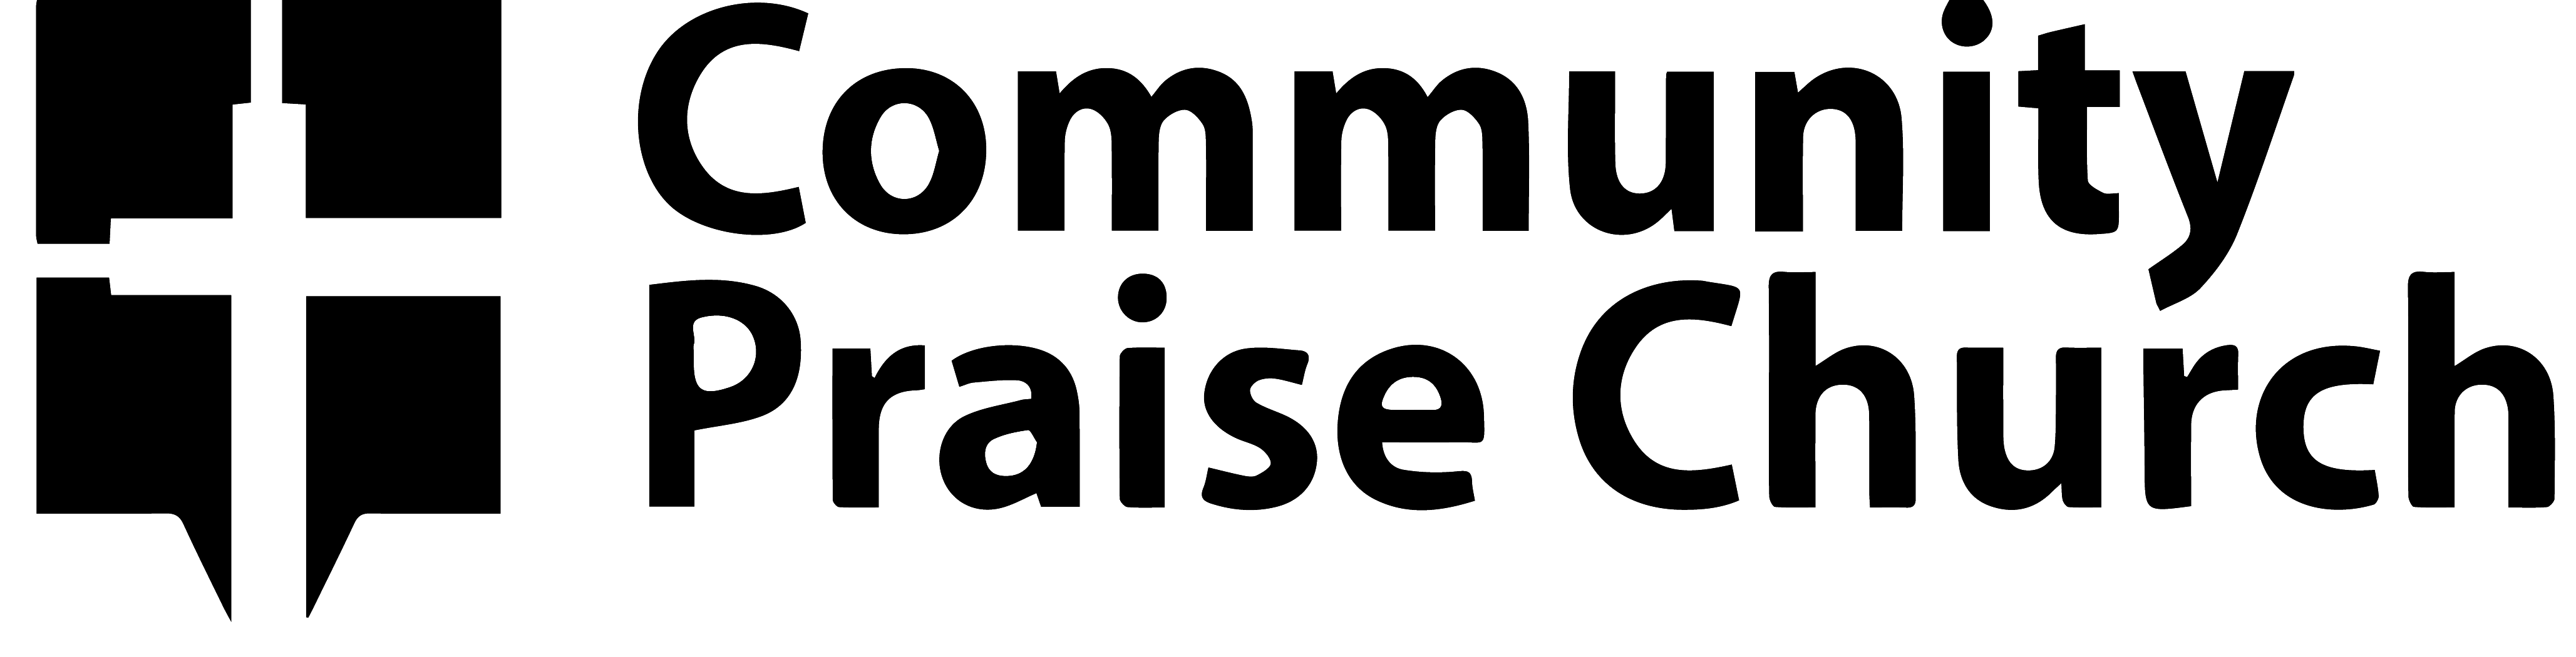 Community Praise Center logo